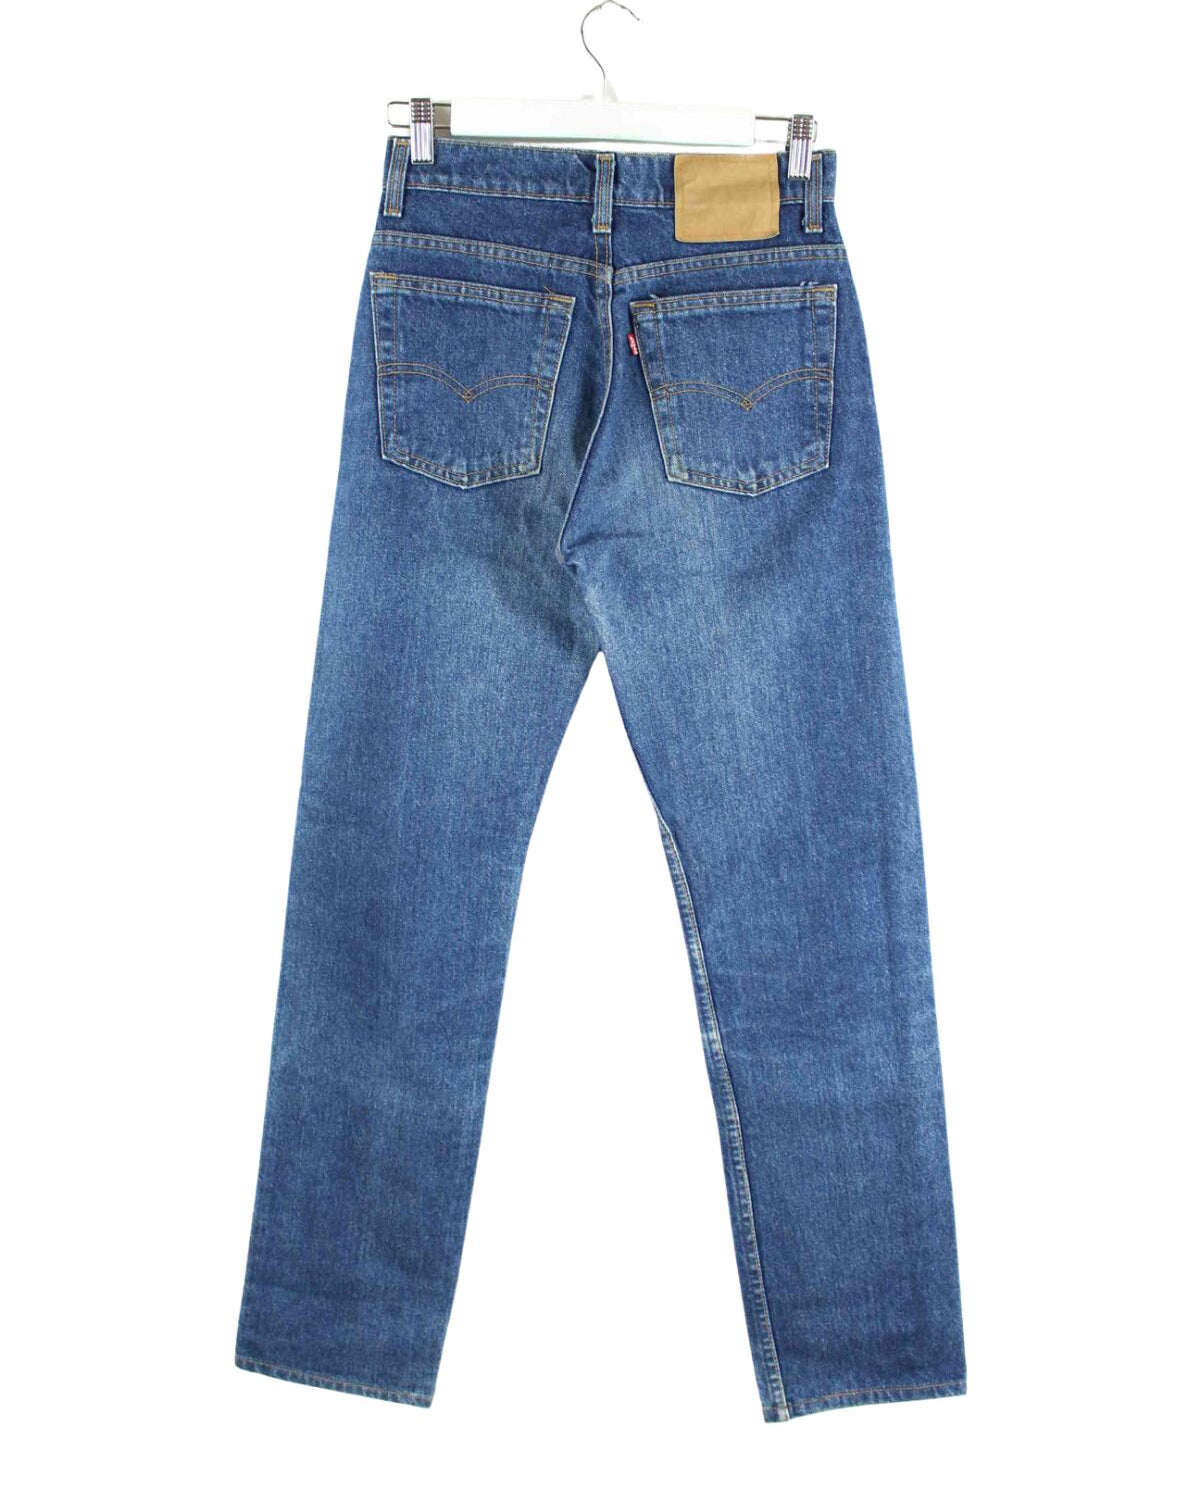 Levi's Damen 1991 Vintage Jeans Blau W28 L34 (back image)